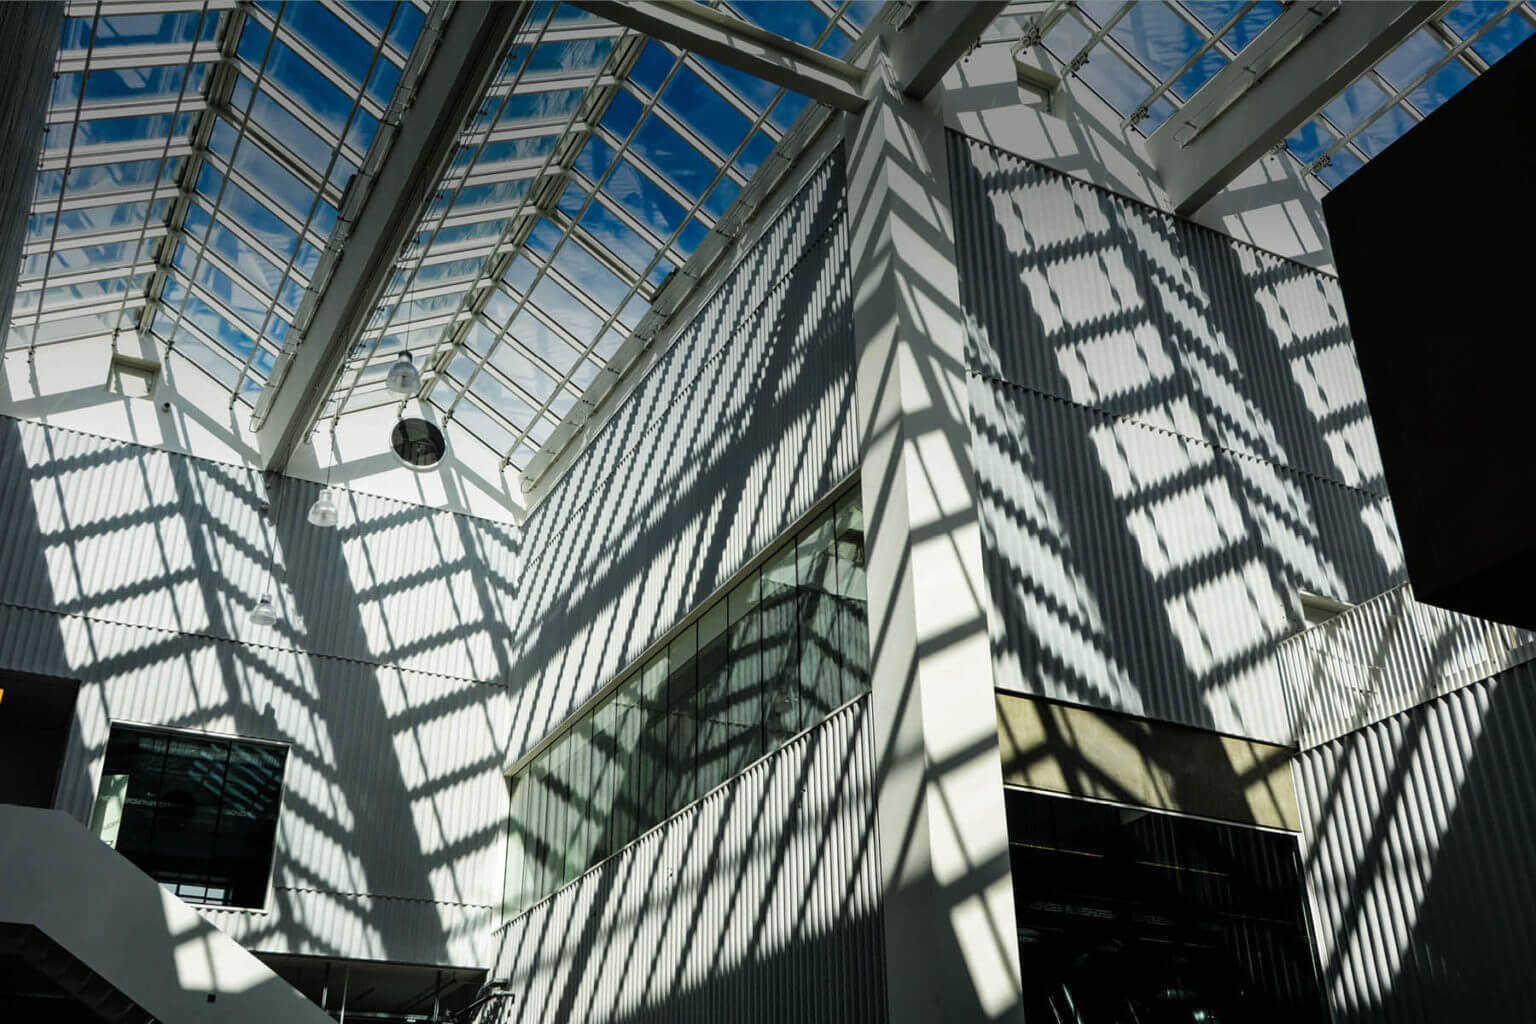 Glaspartiet på Campus Carlsberg giver udsigt til en blå himmel